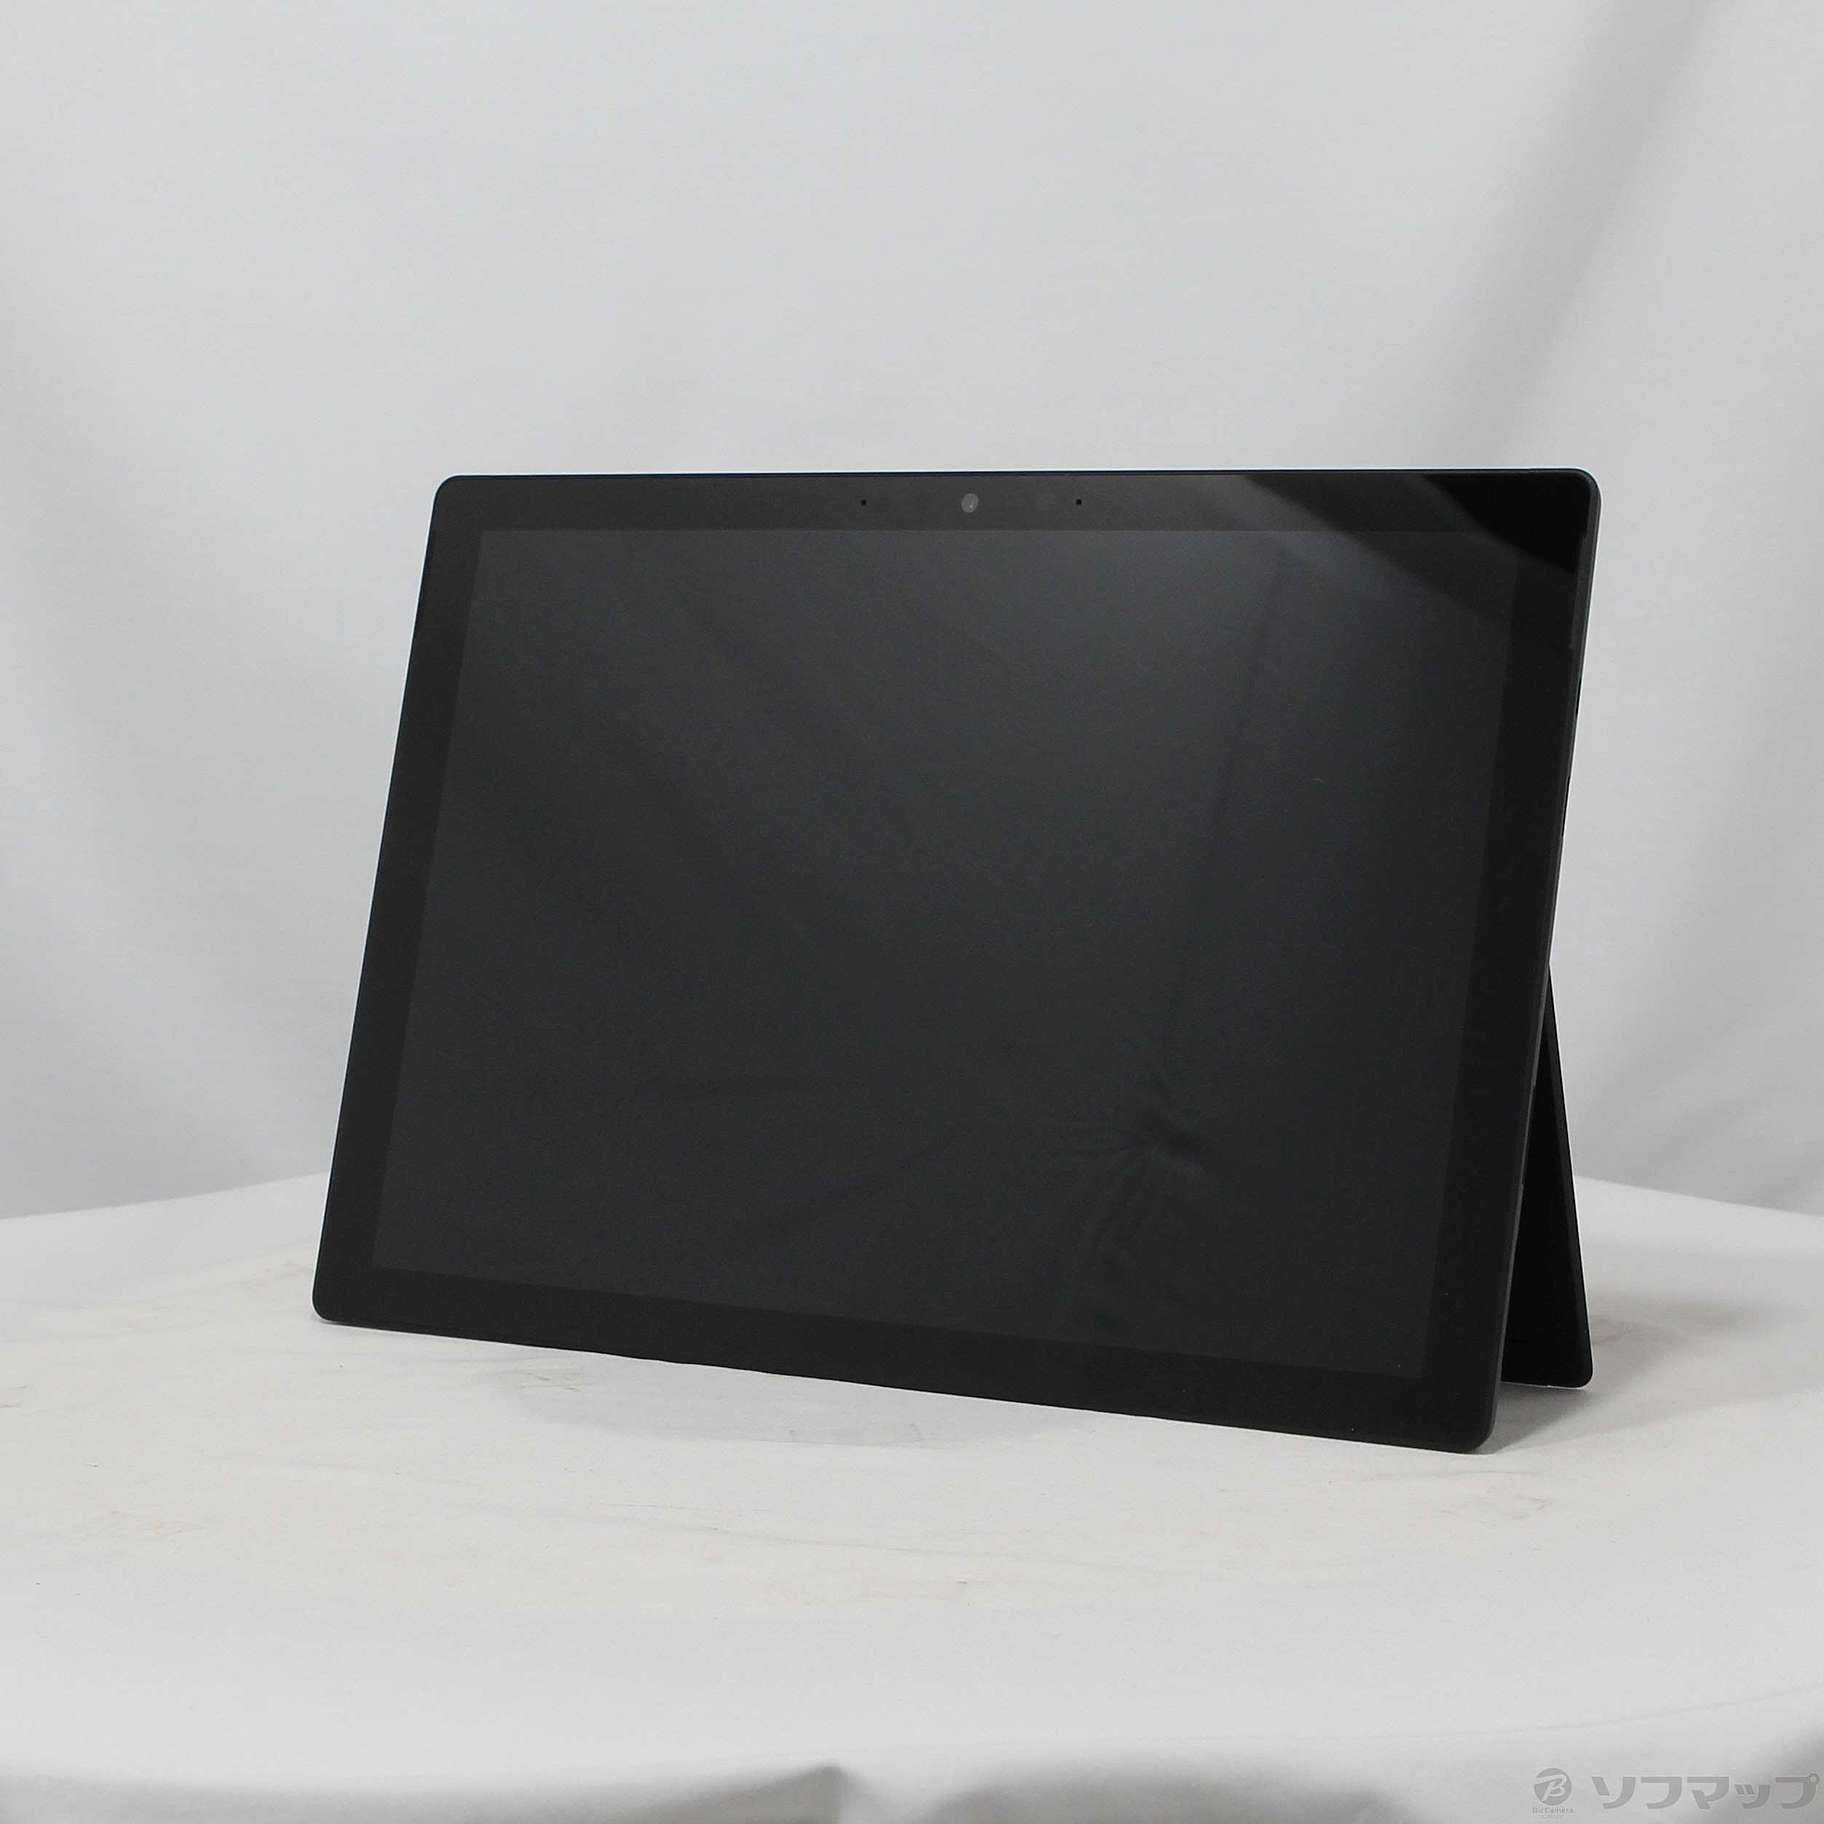 中古】Surface Pro7 〔Core i7／16GB／SSD256GB〕 VNX-00027 ブラック